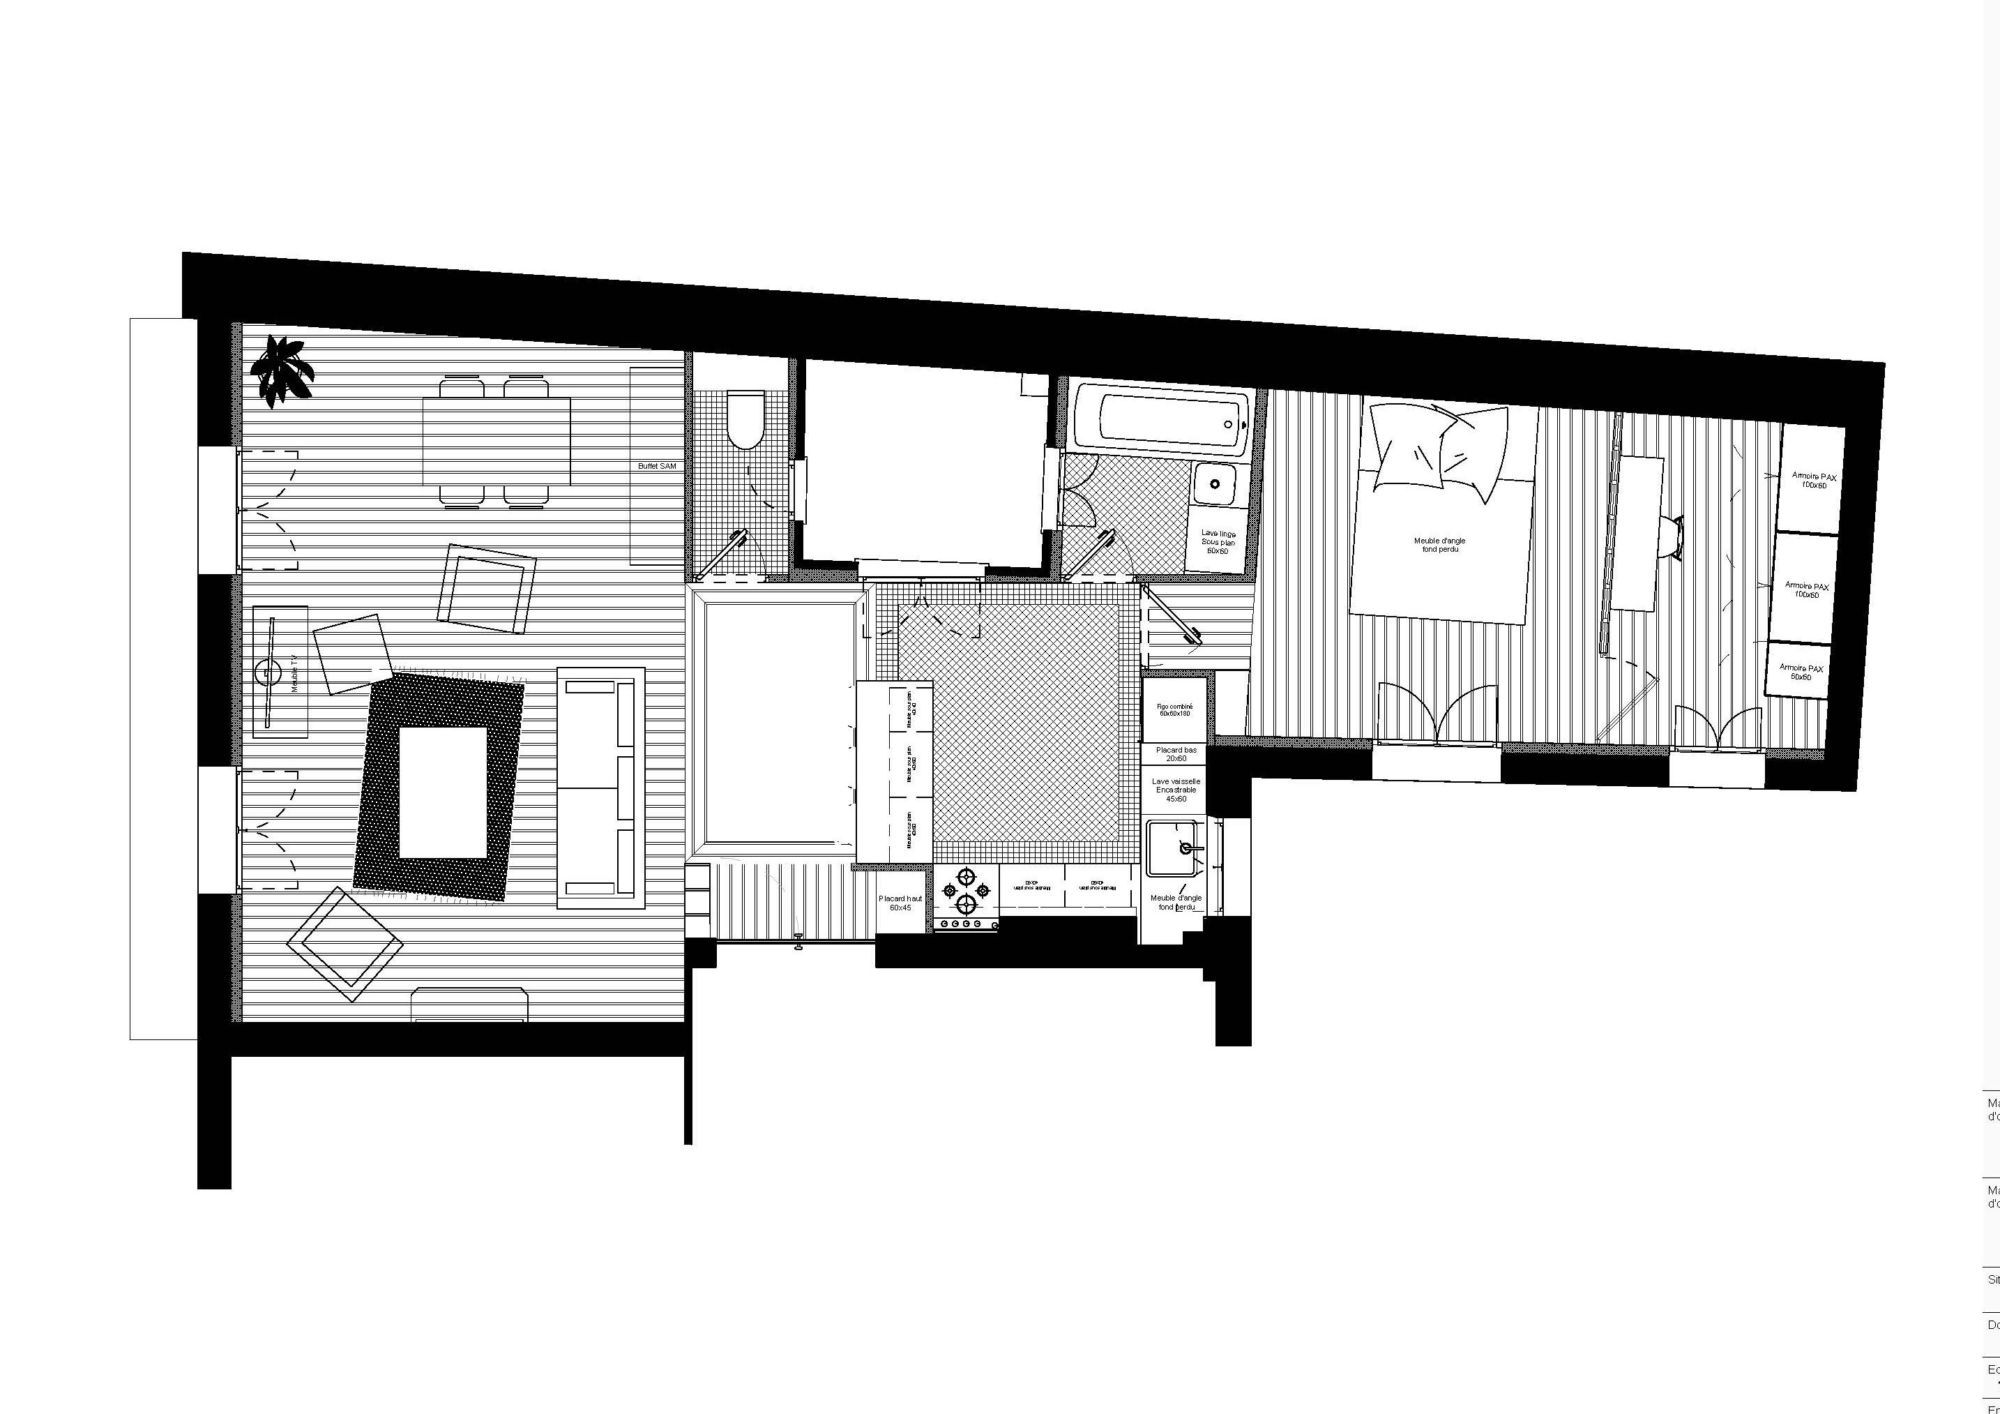 Plan de l'aménagement de l'ensemble de l'appartement